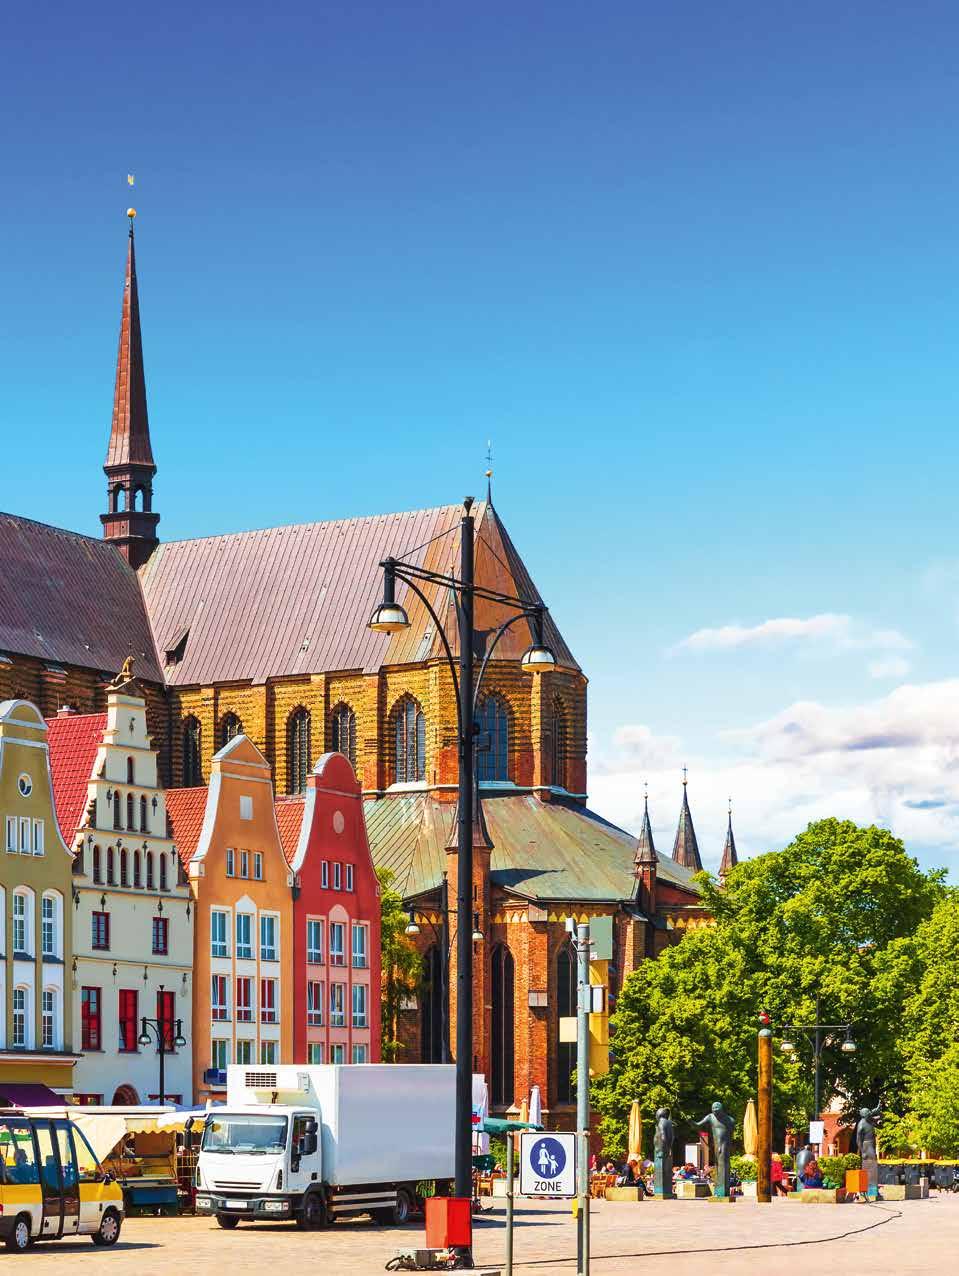 Das Stadtjubiläum wurde bereits im Juni im Rahmen des 38. Internationalen Hansetags gefeiert, den Rostock in diesem Jahr ausgerichtet hat.